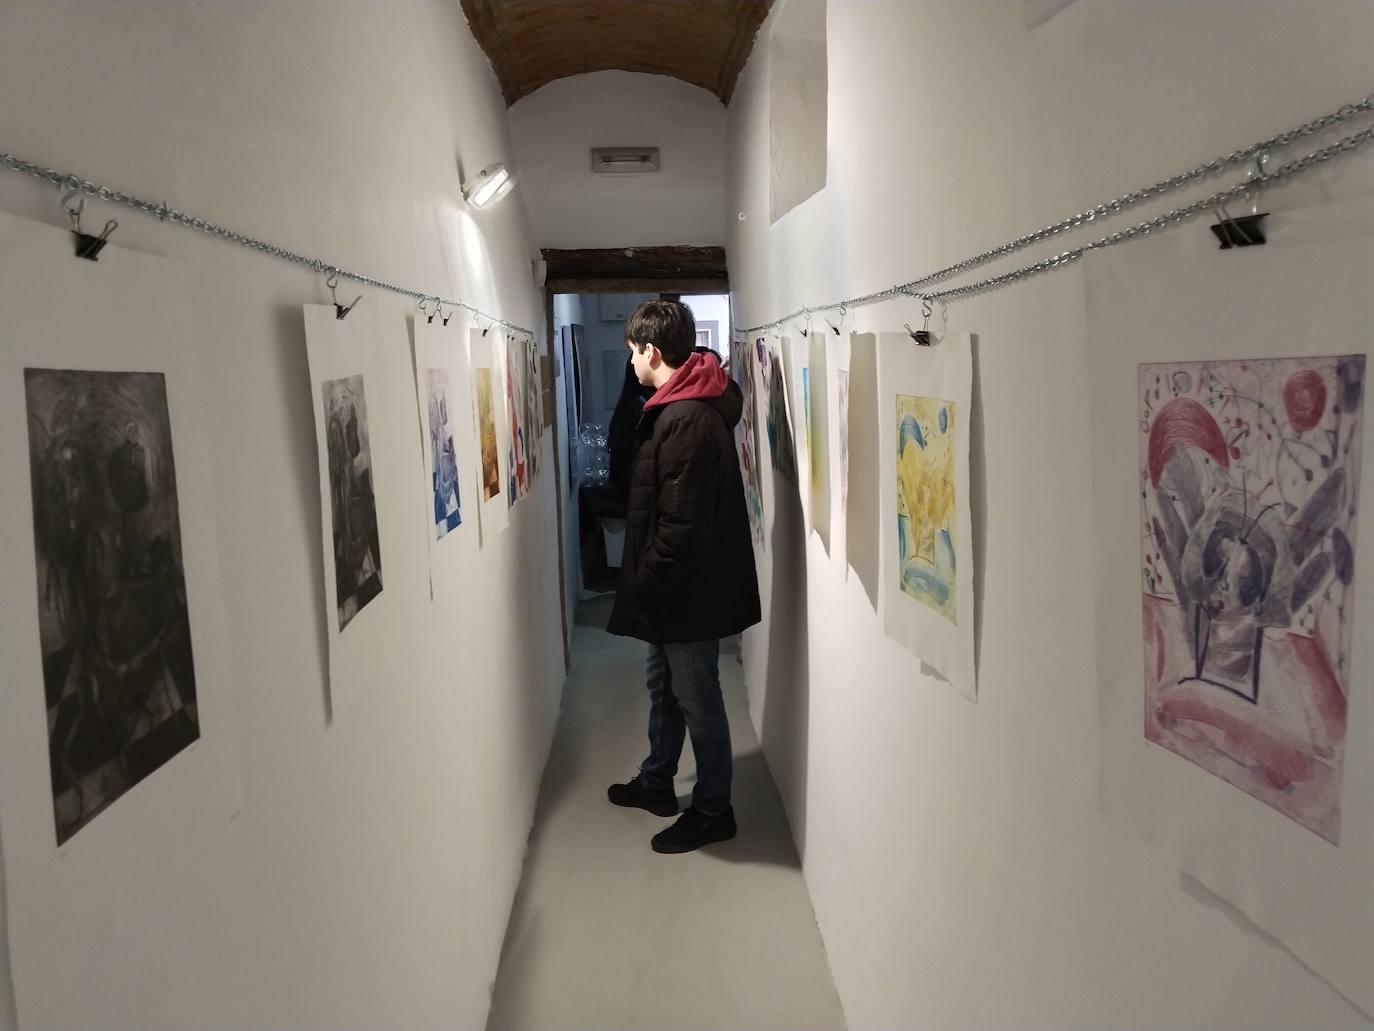 Imagen principal - El Museo del Queso abre sus puertas al mundo artístico, y Candela Borges expone por primera vez su obra